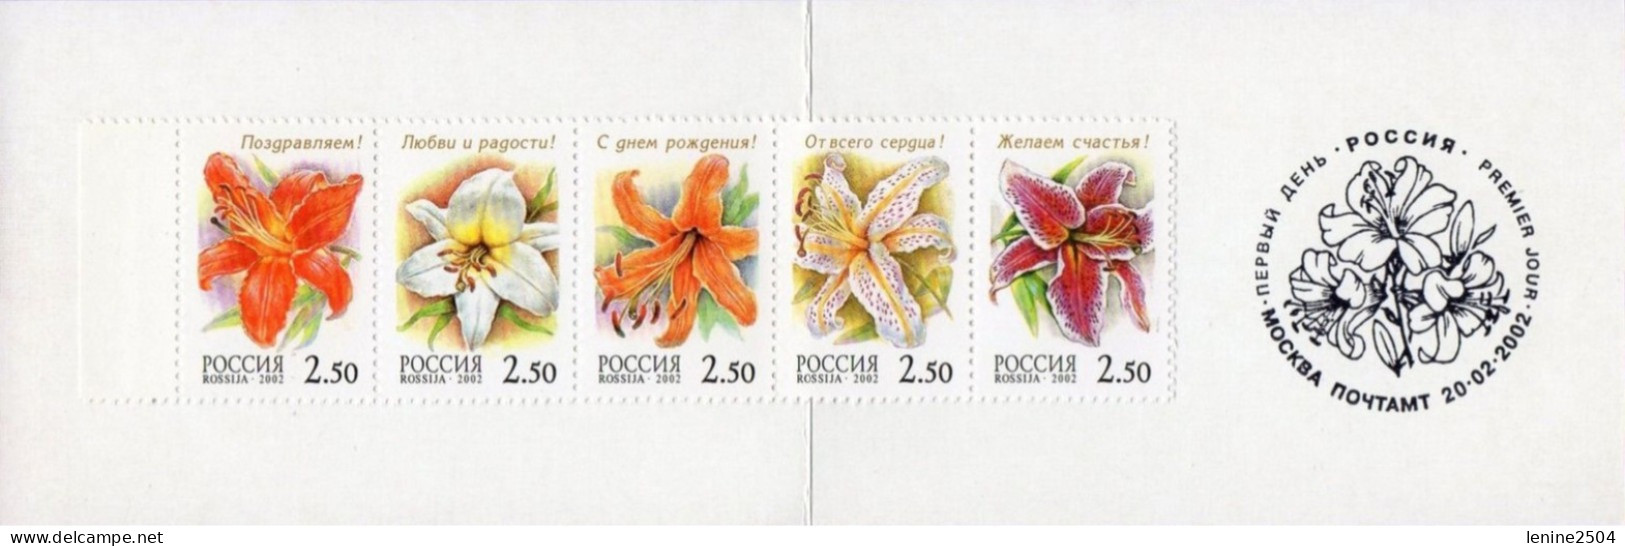 Russie 2002 Yvert N° 6617-6621 ** Les Lys Emission 1er Jour Carnet Prestige Folder Booklet. - Unused Stamps